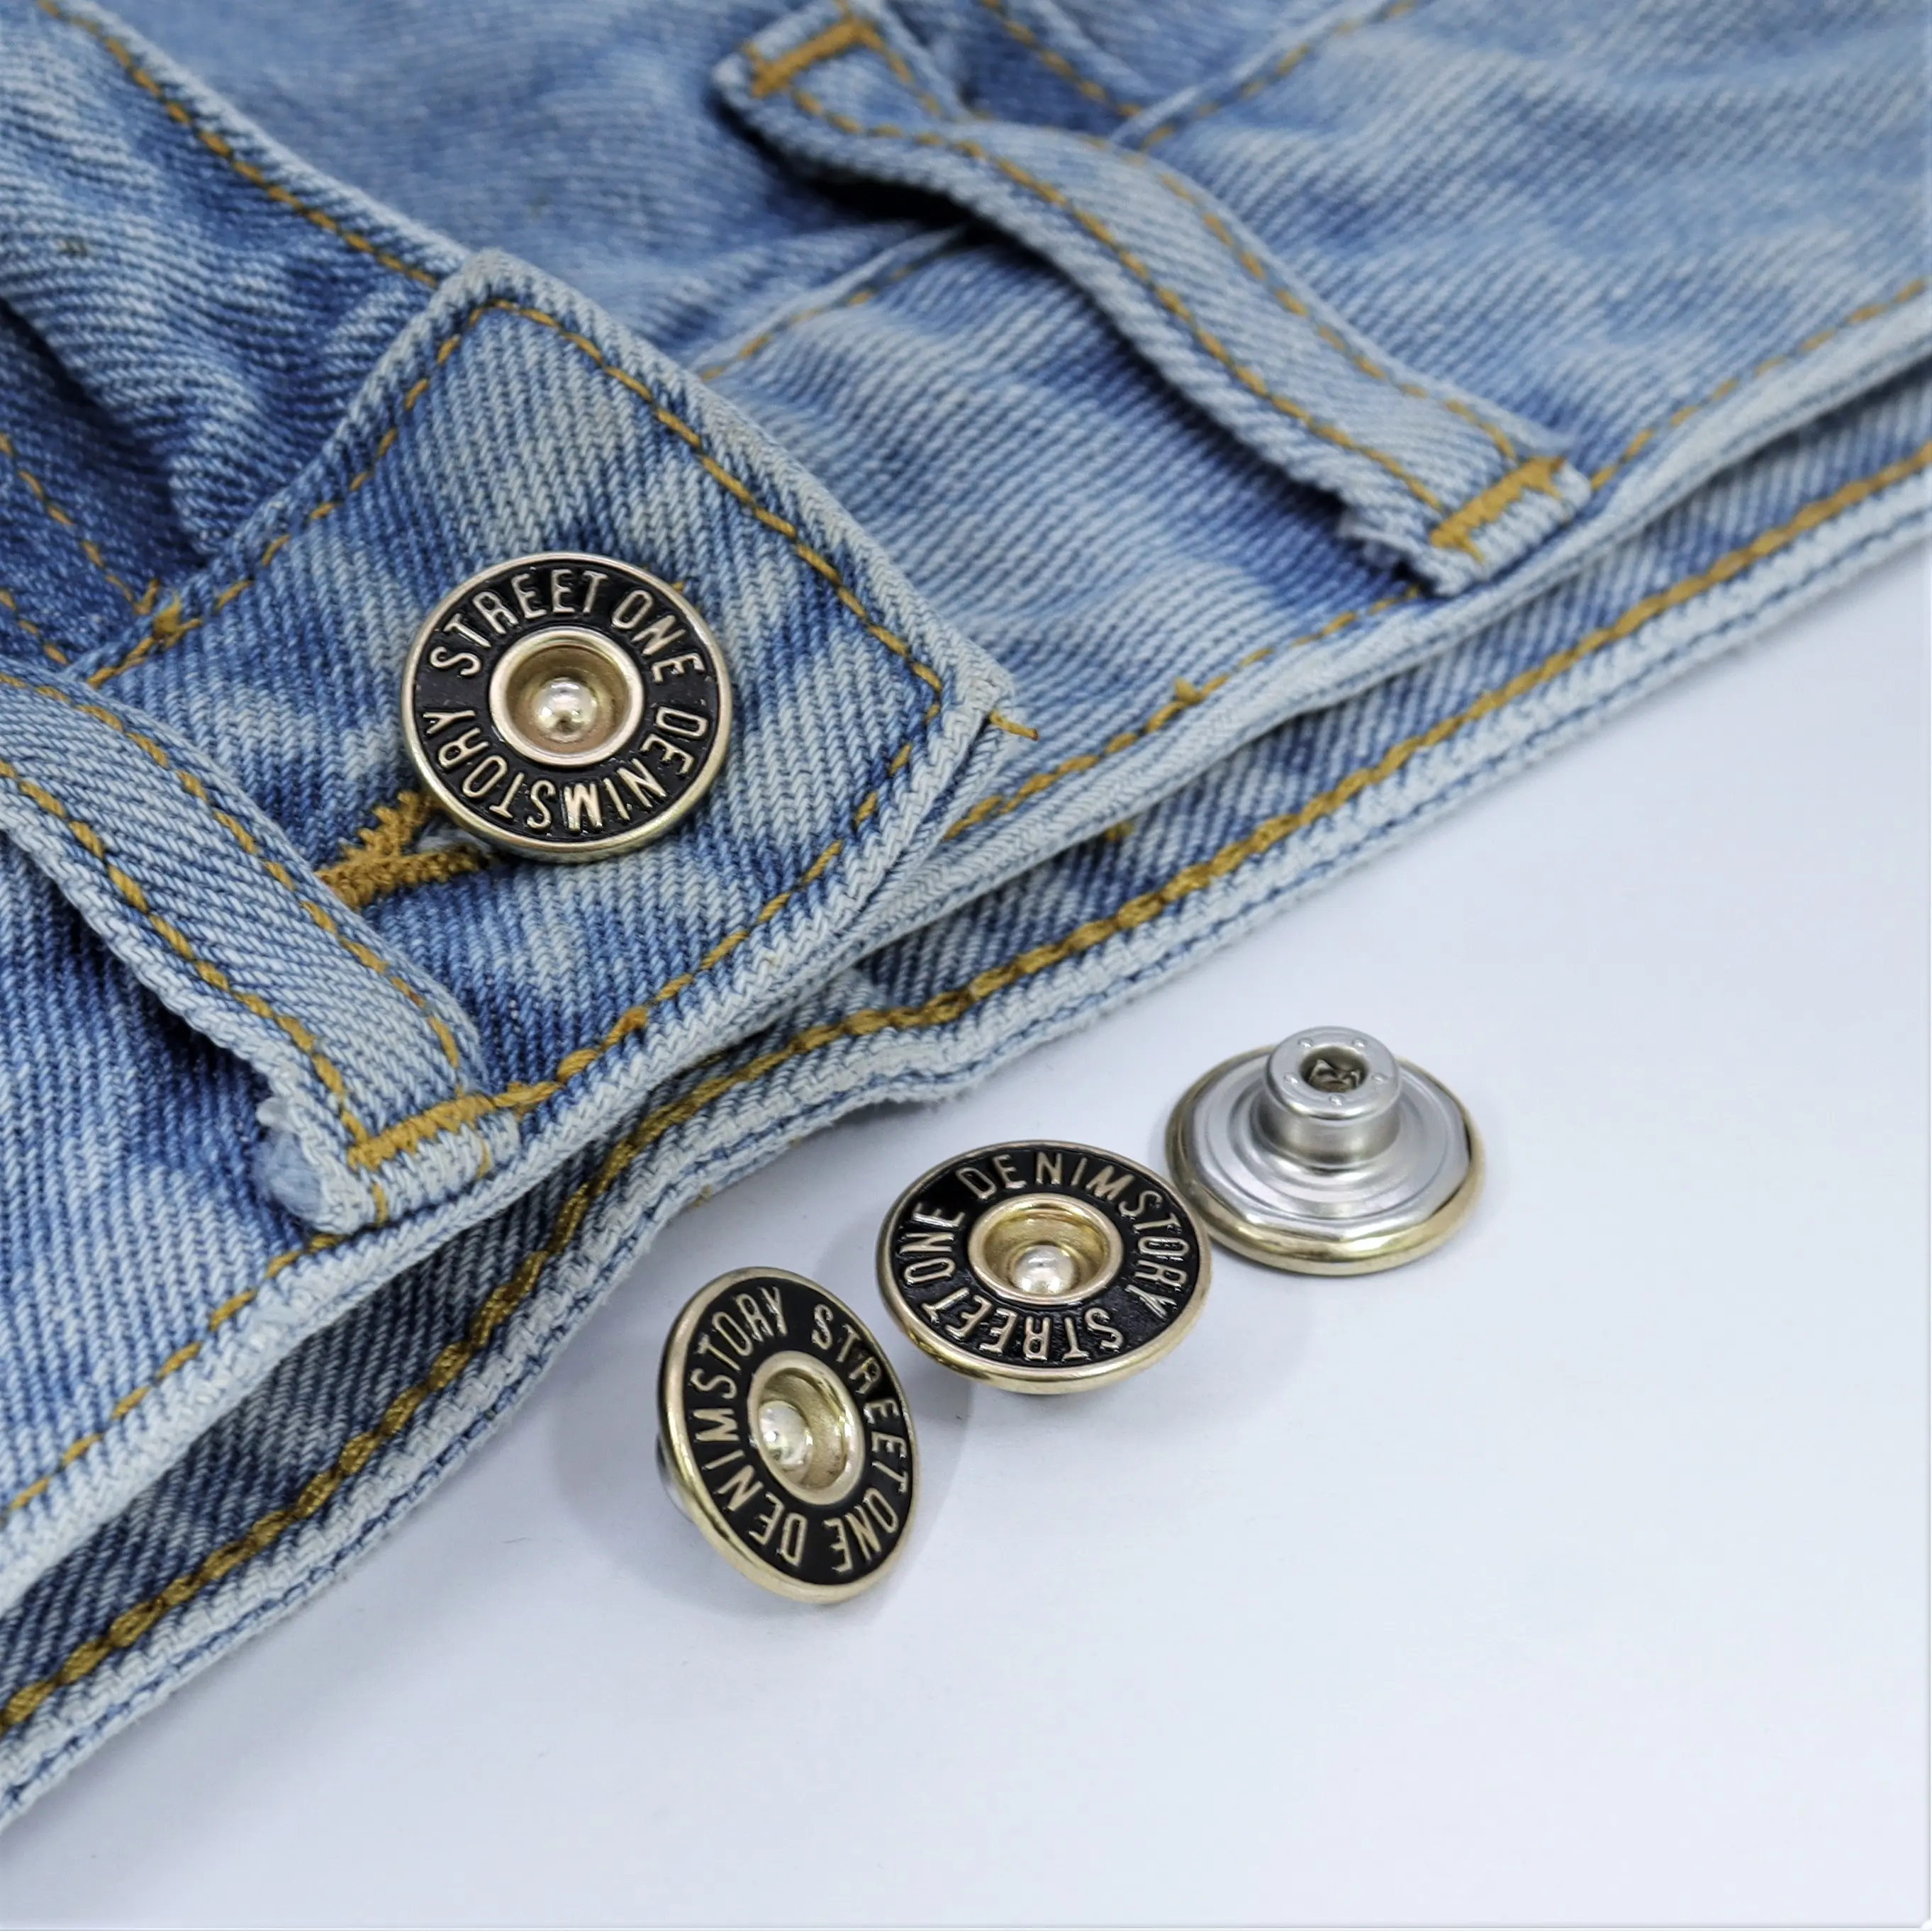 Promocional atacado venda quente eletroplaca roupa botão de metal personalizado ouro pressão para baixo camisa remover botões jeans